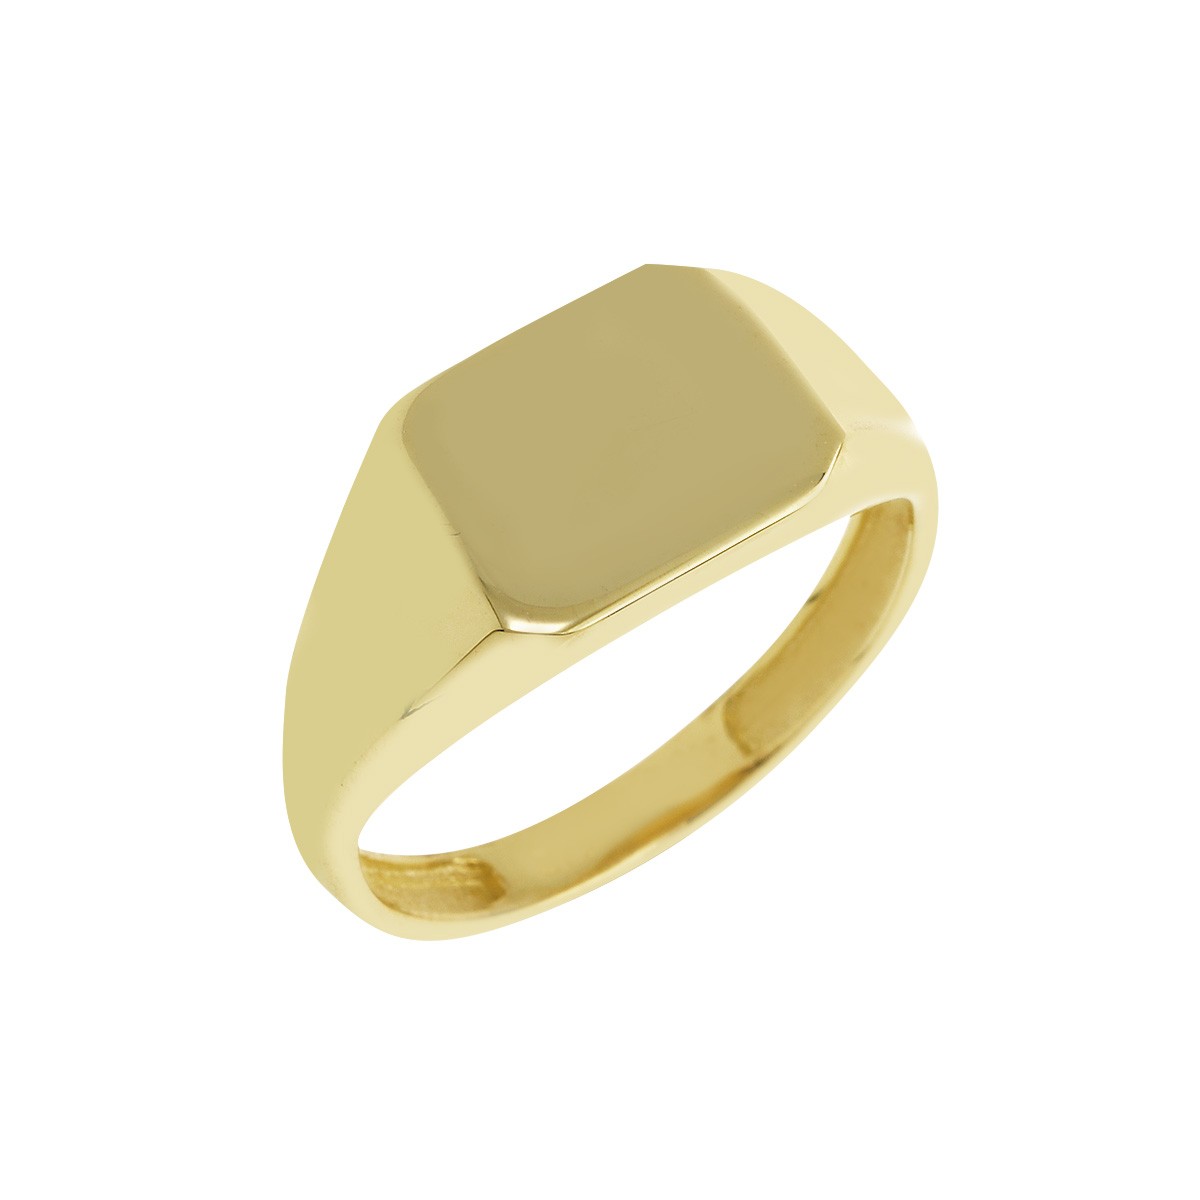 Δακτυλίδι Ανδρικό Χρυσό Κ9 Κωδ: 401150